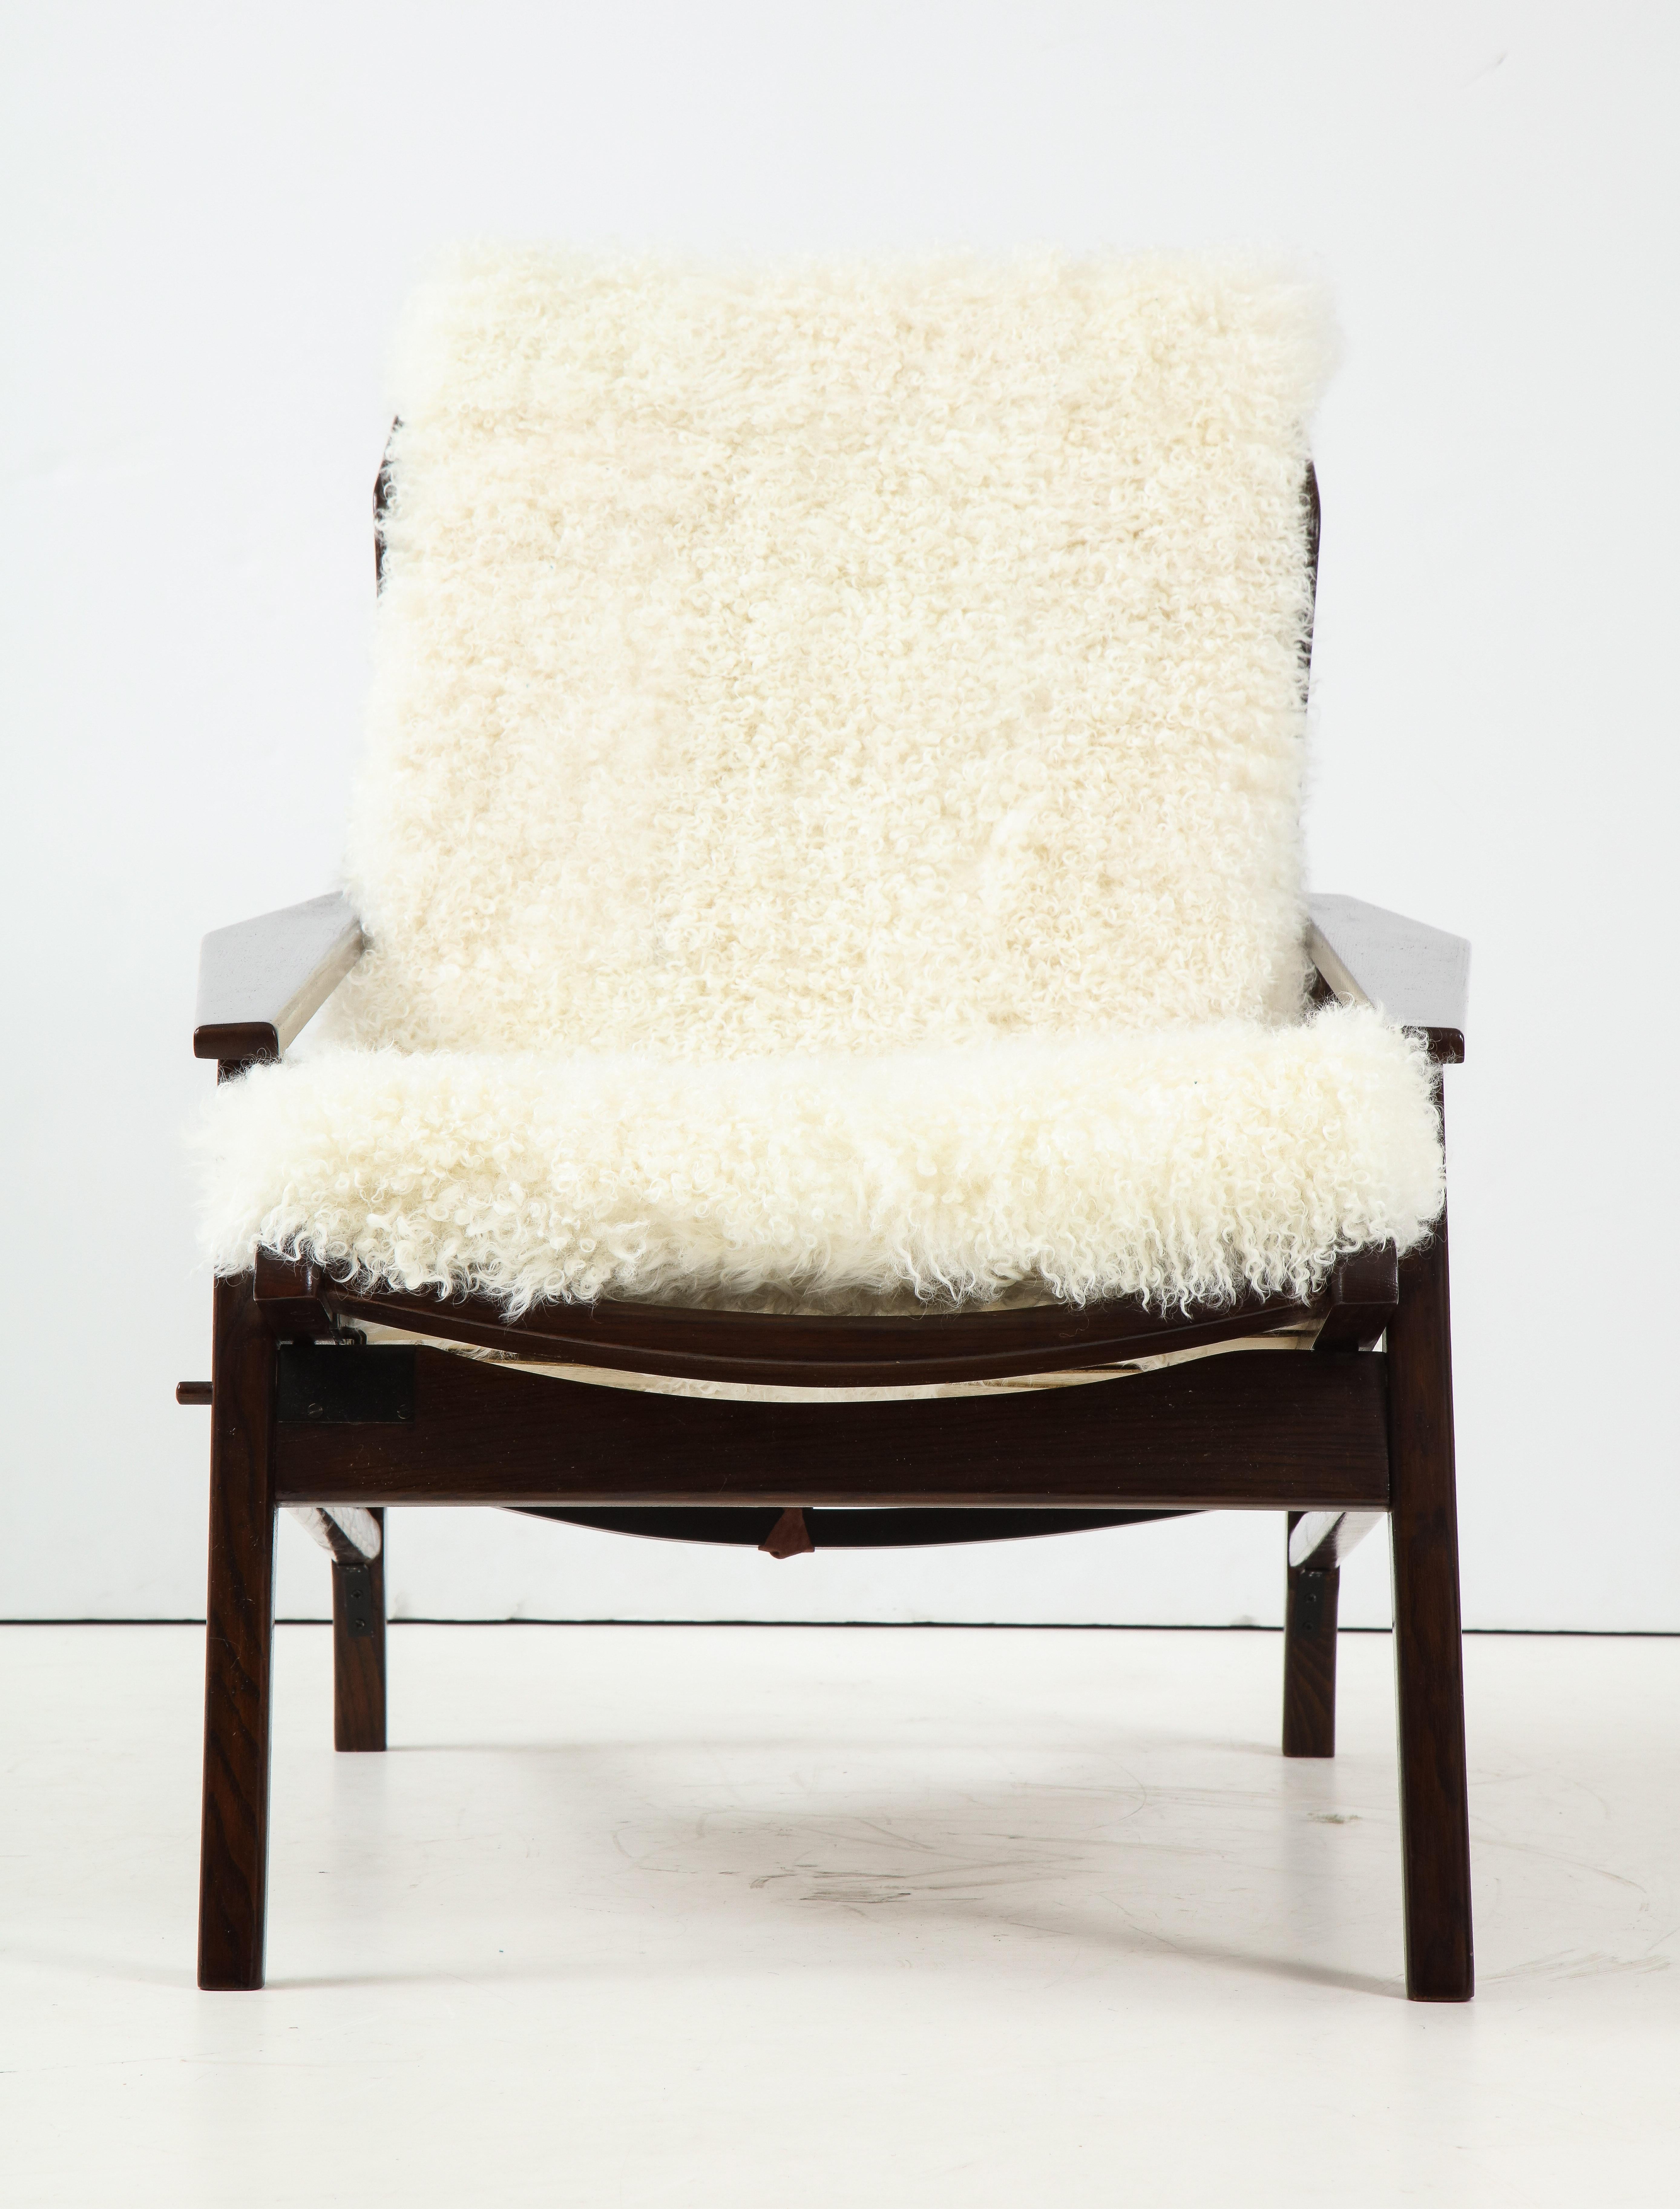 Stained 1950s Italian Oak Reclining Lounge Chair in White Kalgan Lambskin